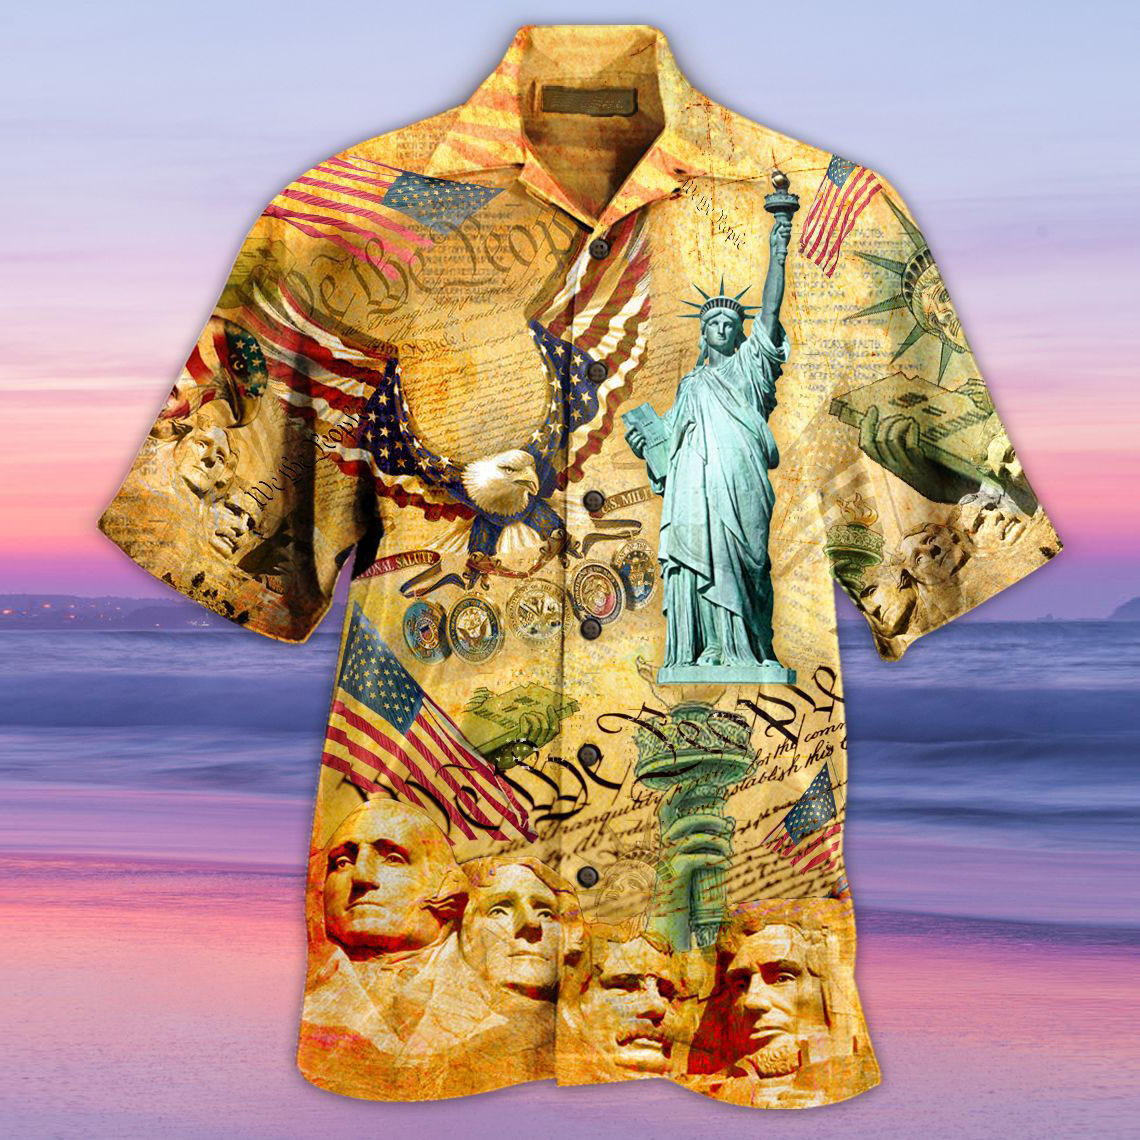 Men's Liberty Short Sleeve Chic Beach Shirt